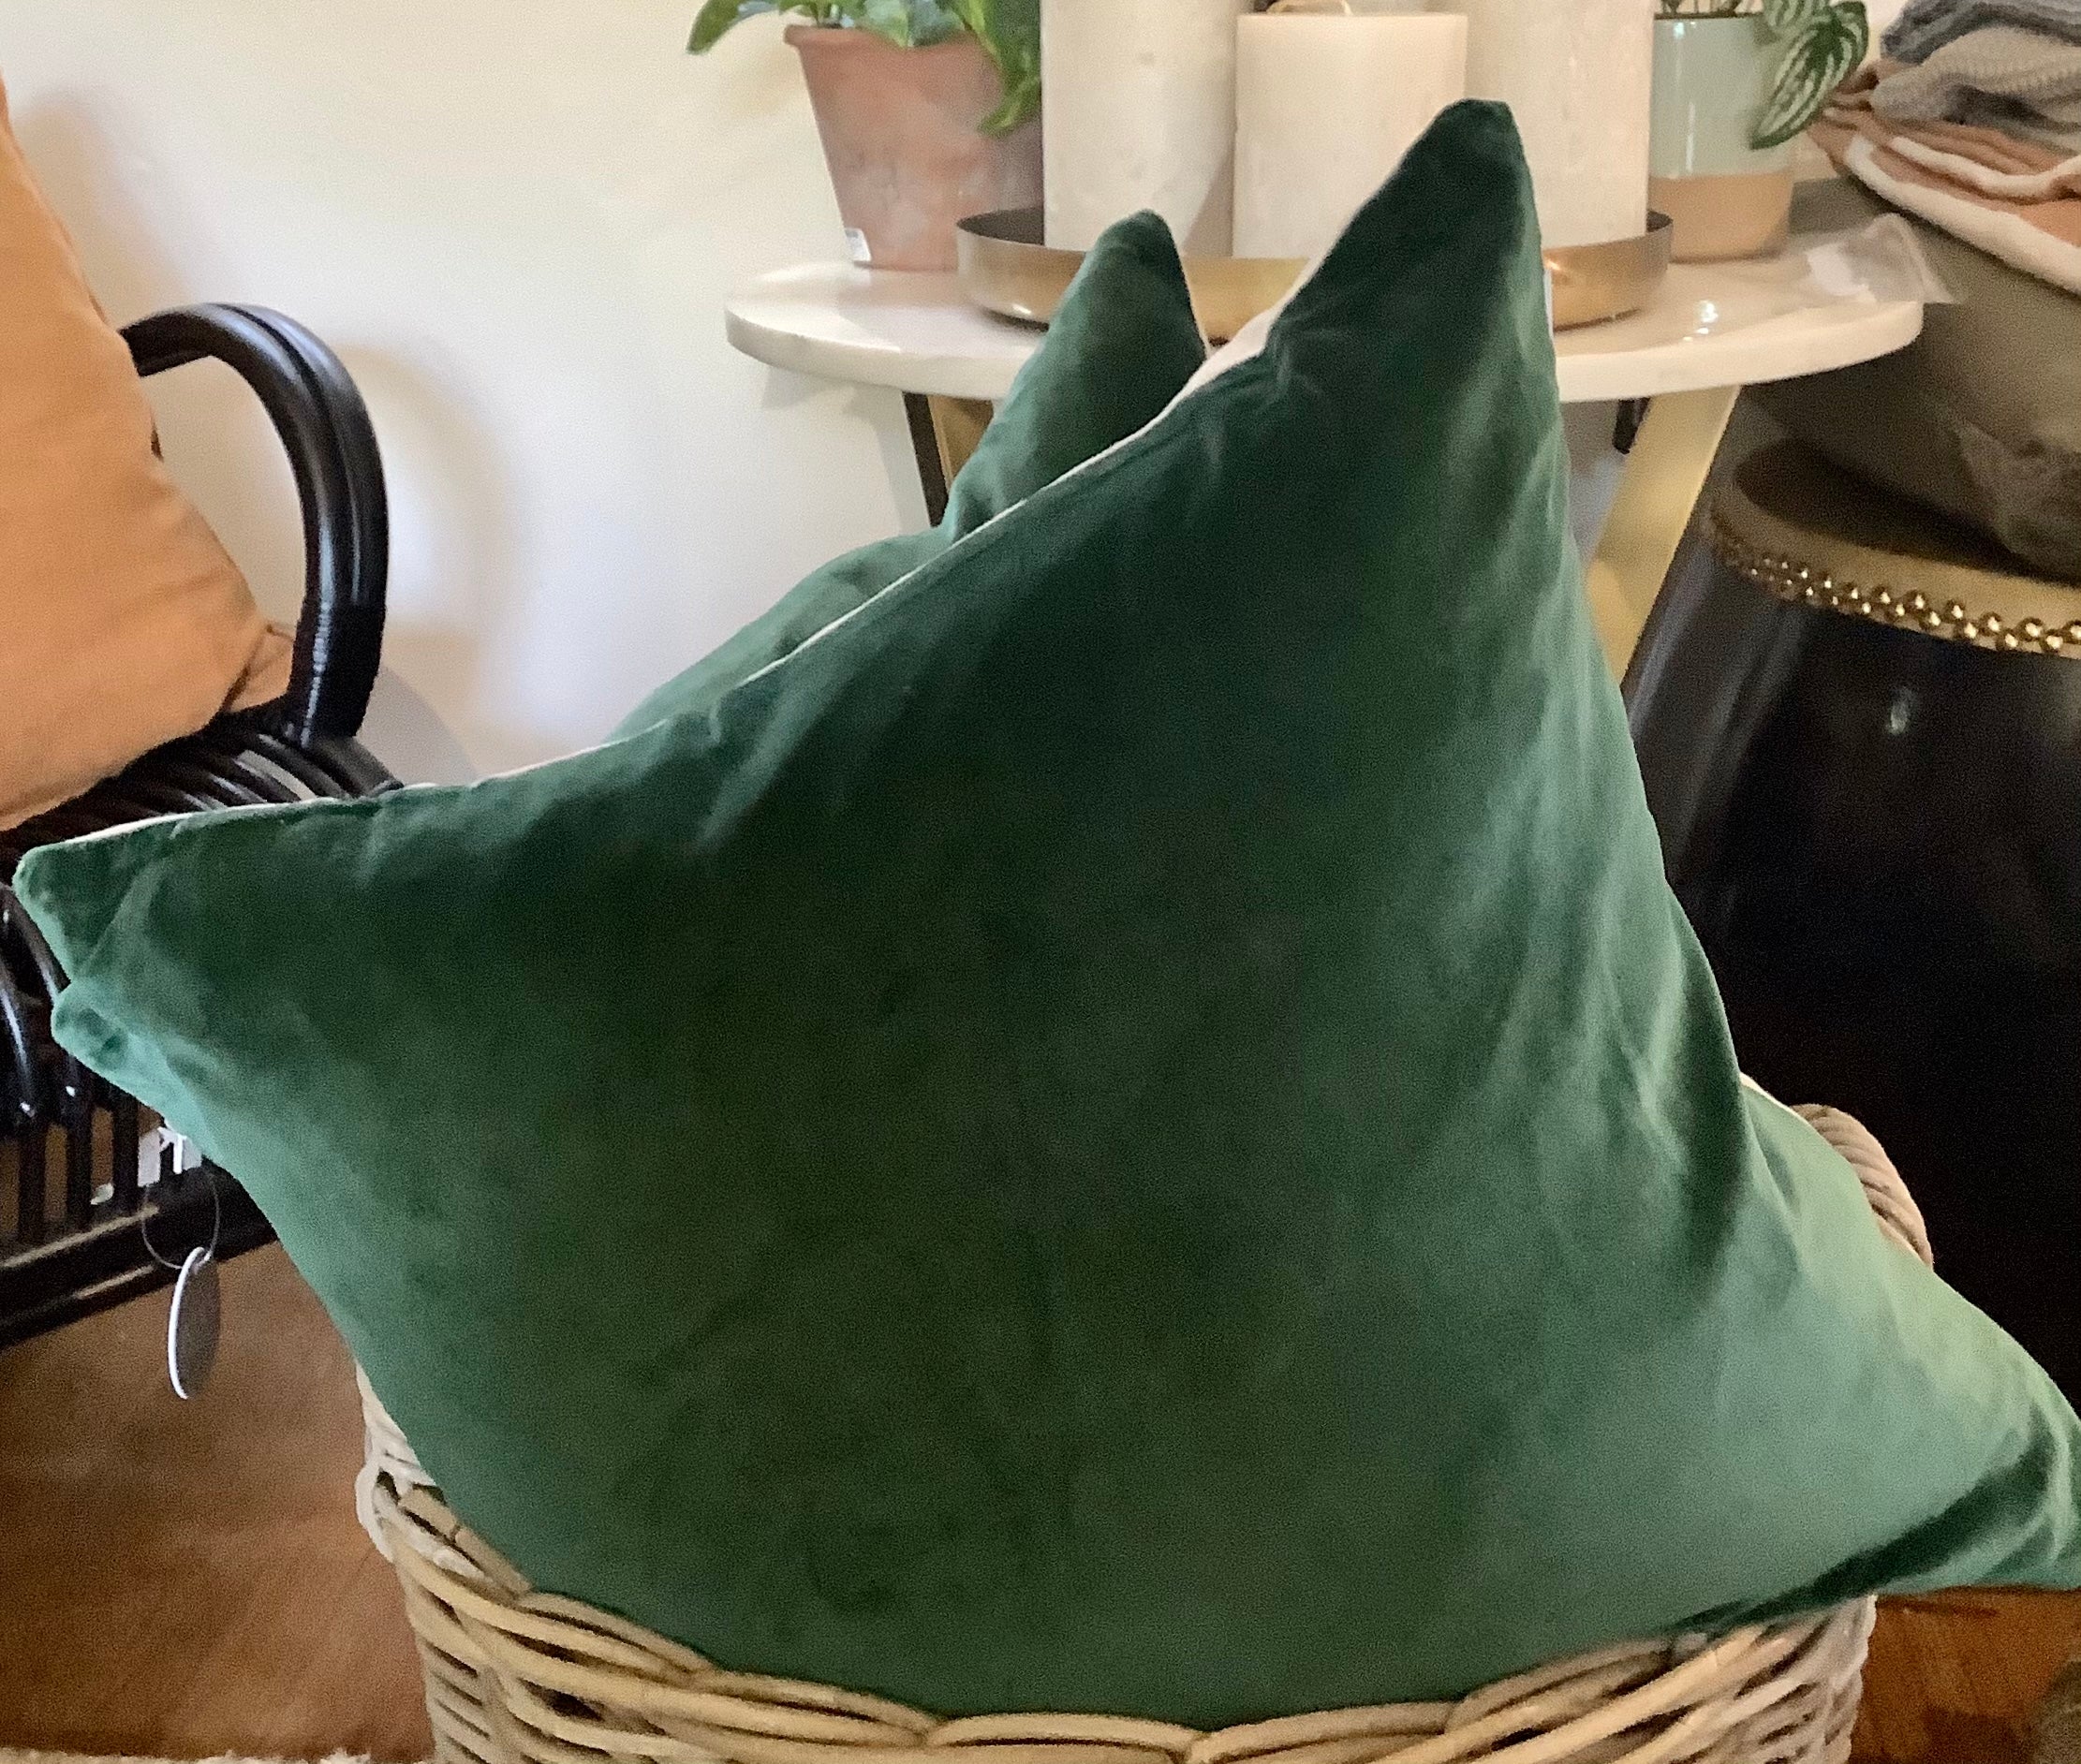 Velvet Linen Cushion 55cm